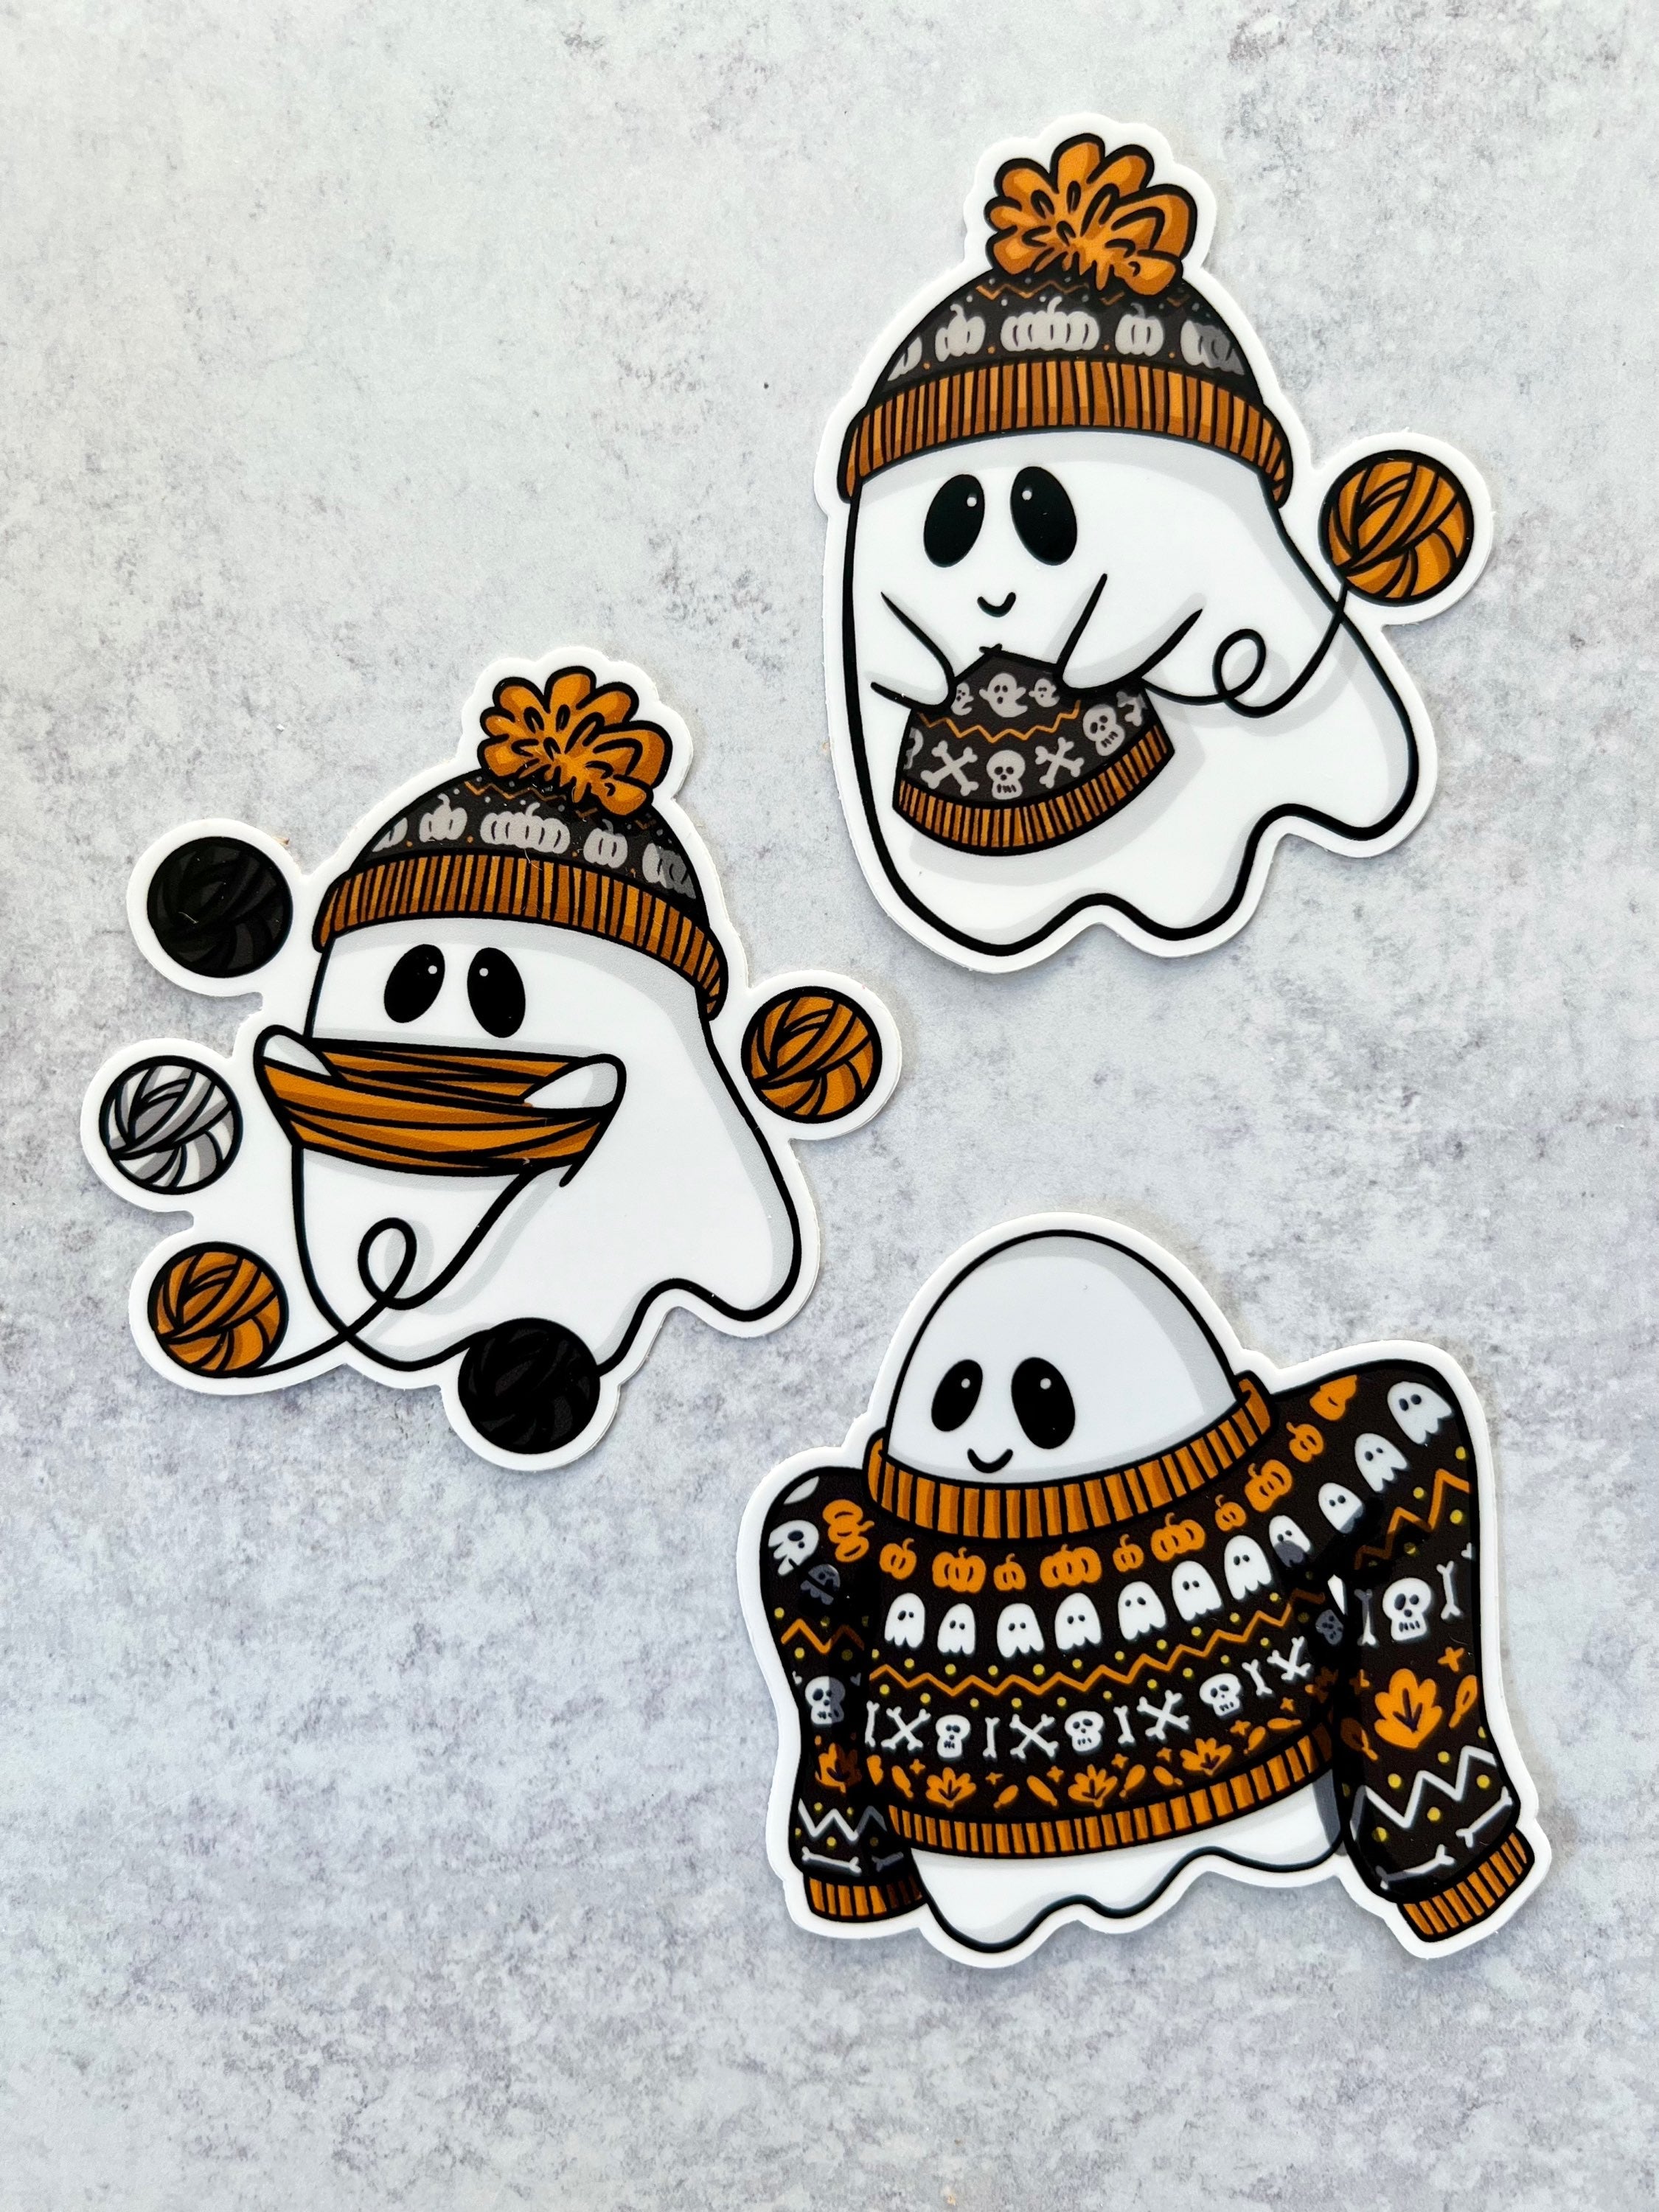 Sticker - Winding Yarn Ghostie - 3x3in